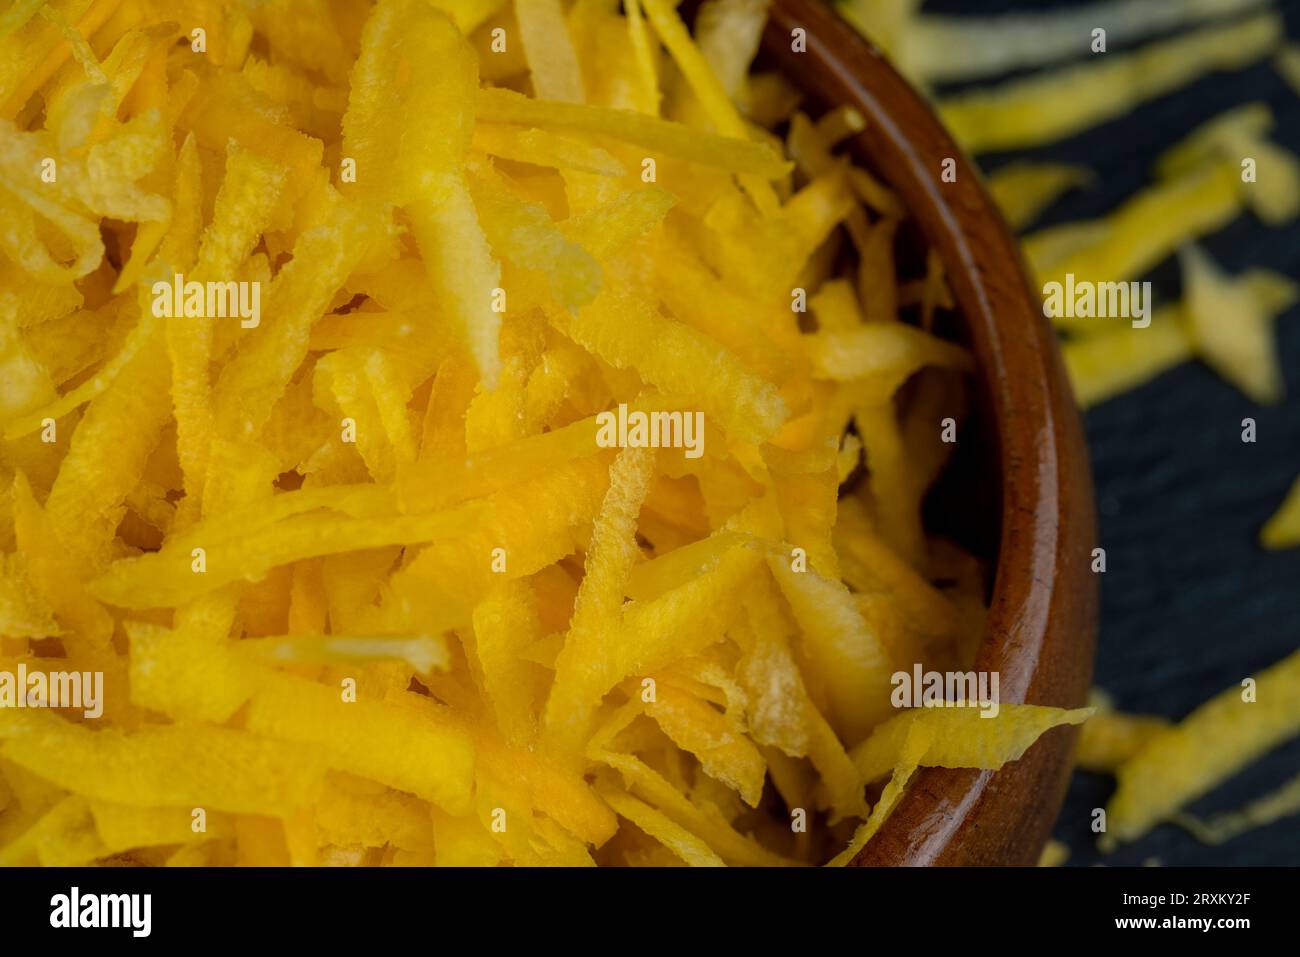 Fein geriebene gelbe Karotten in der Küche, mehrere geschälte und gewaschene Karotten auf einer Reibe in Stücke gerieben Stockfoto